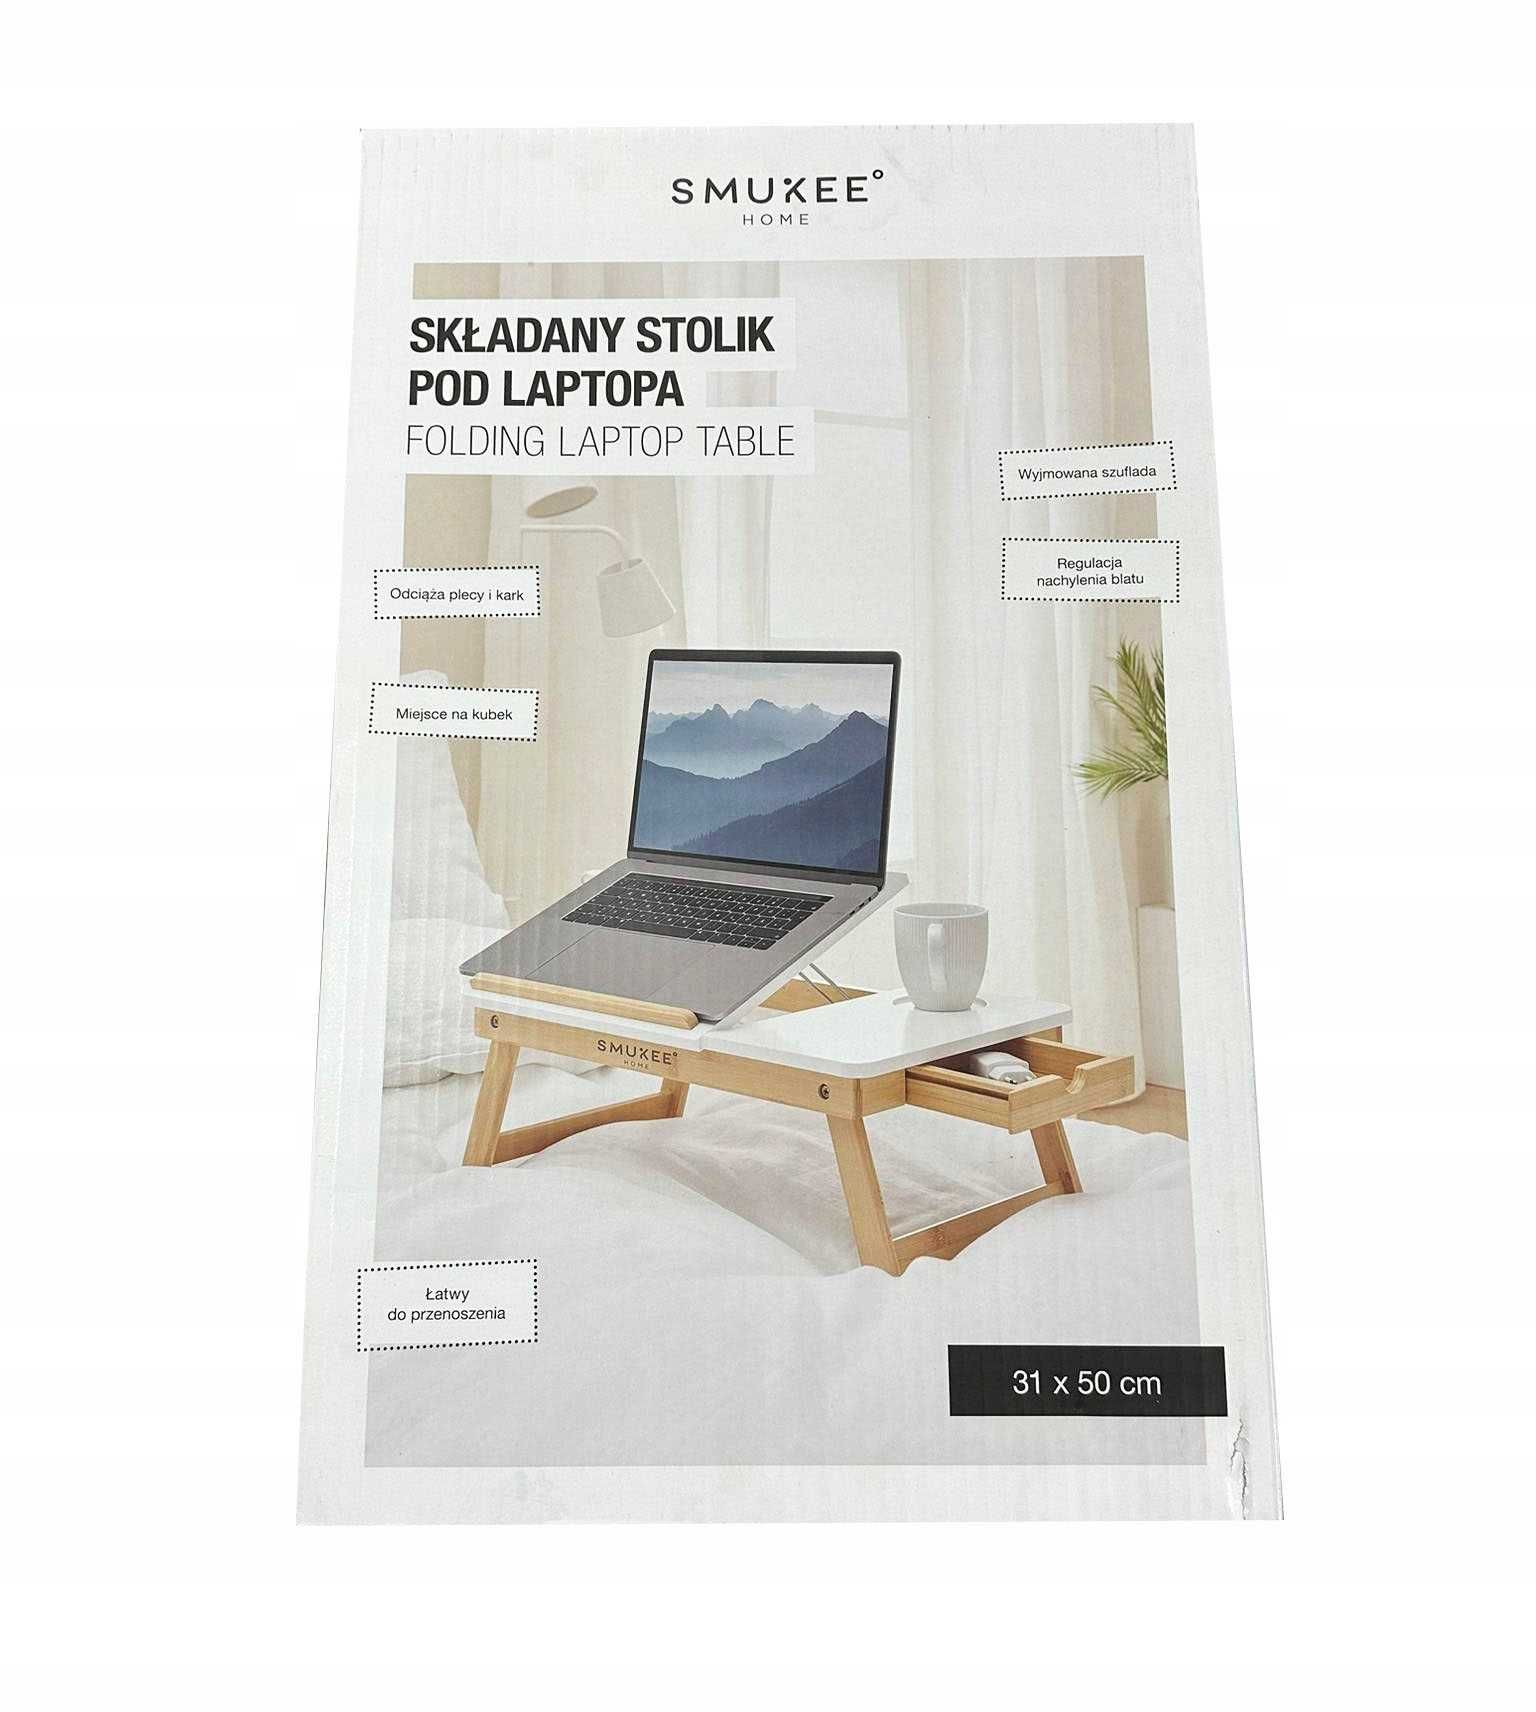 Składany stolik pod laptopa SMUKEE 50x31 nowy